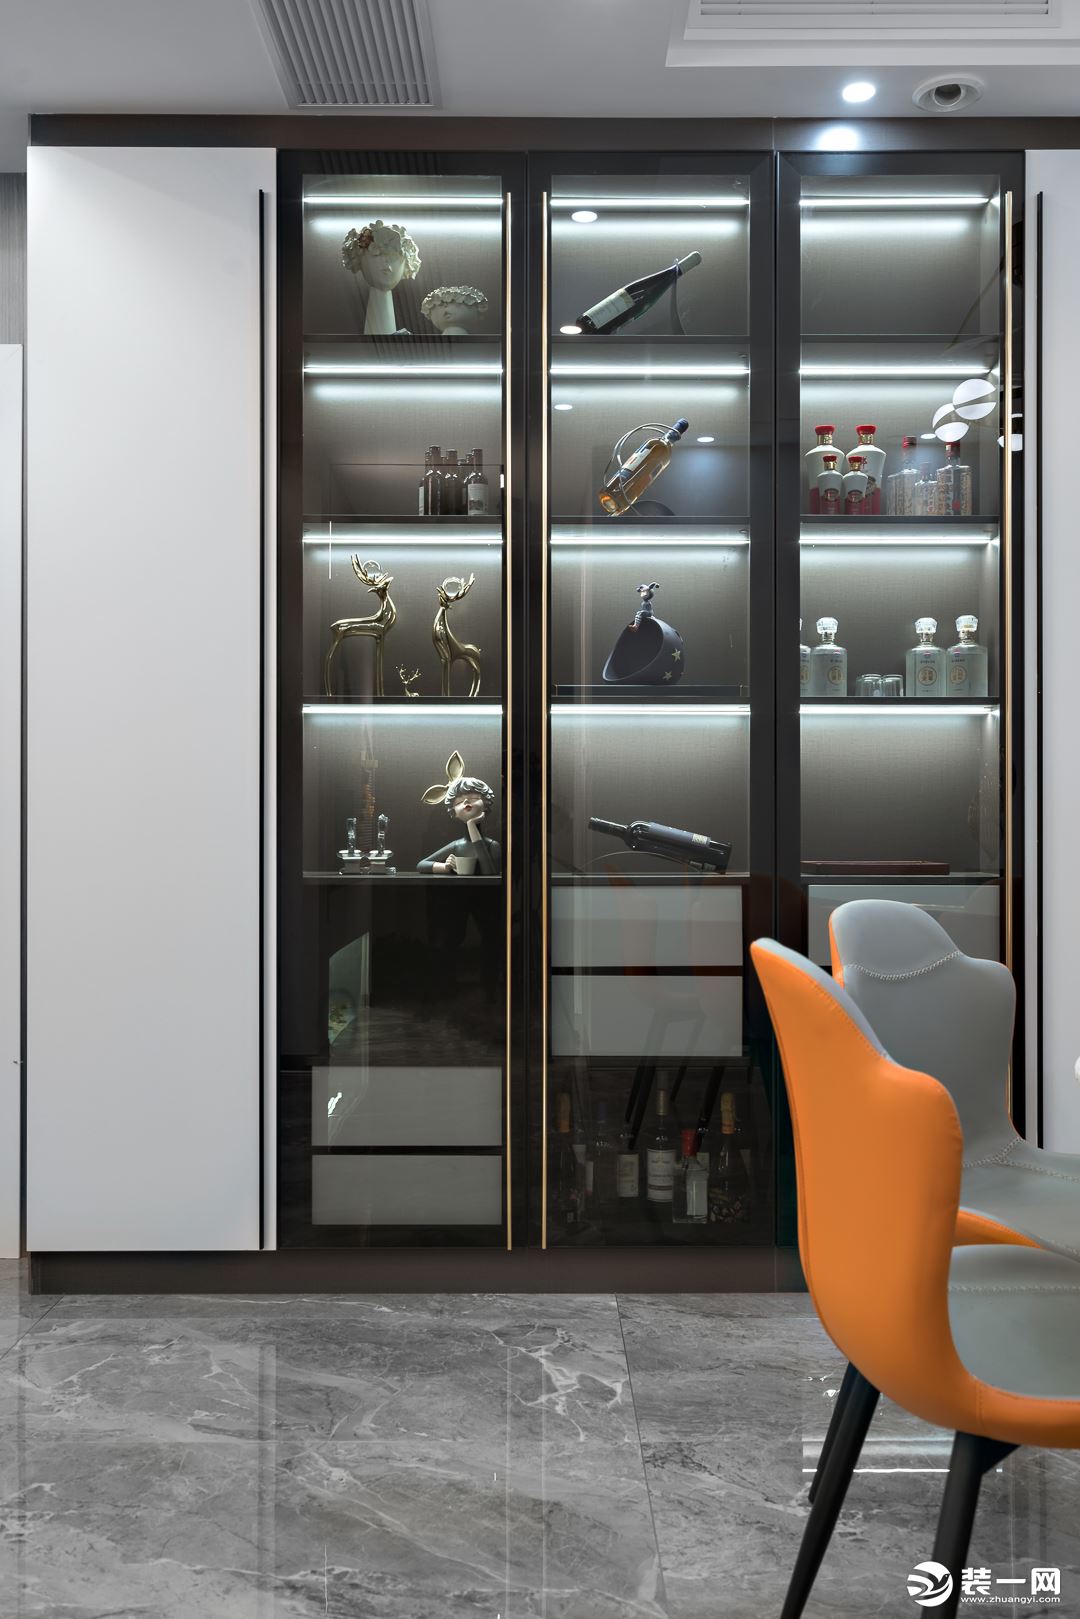 酒柜选用对称的嵌入式玻璃柜样式，把手处以金属镶边装饰，轻奢气质满分。